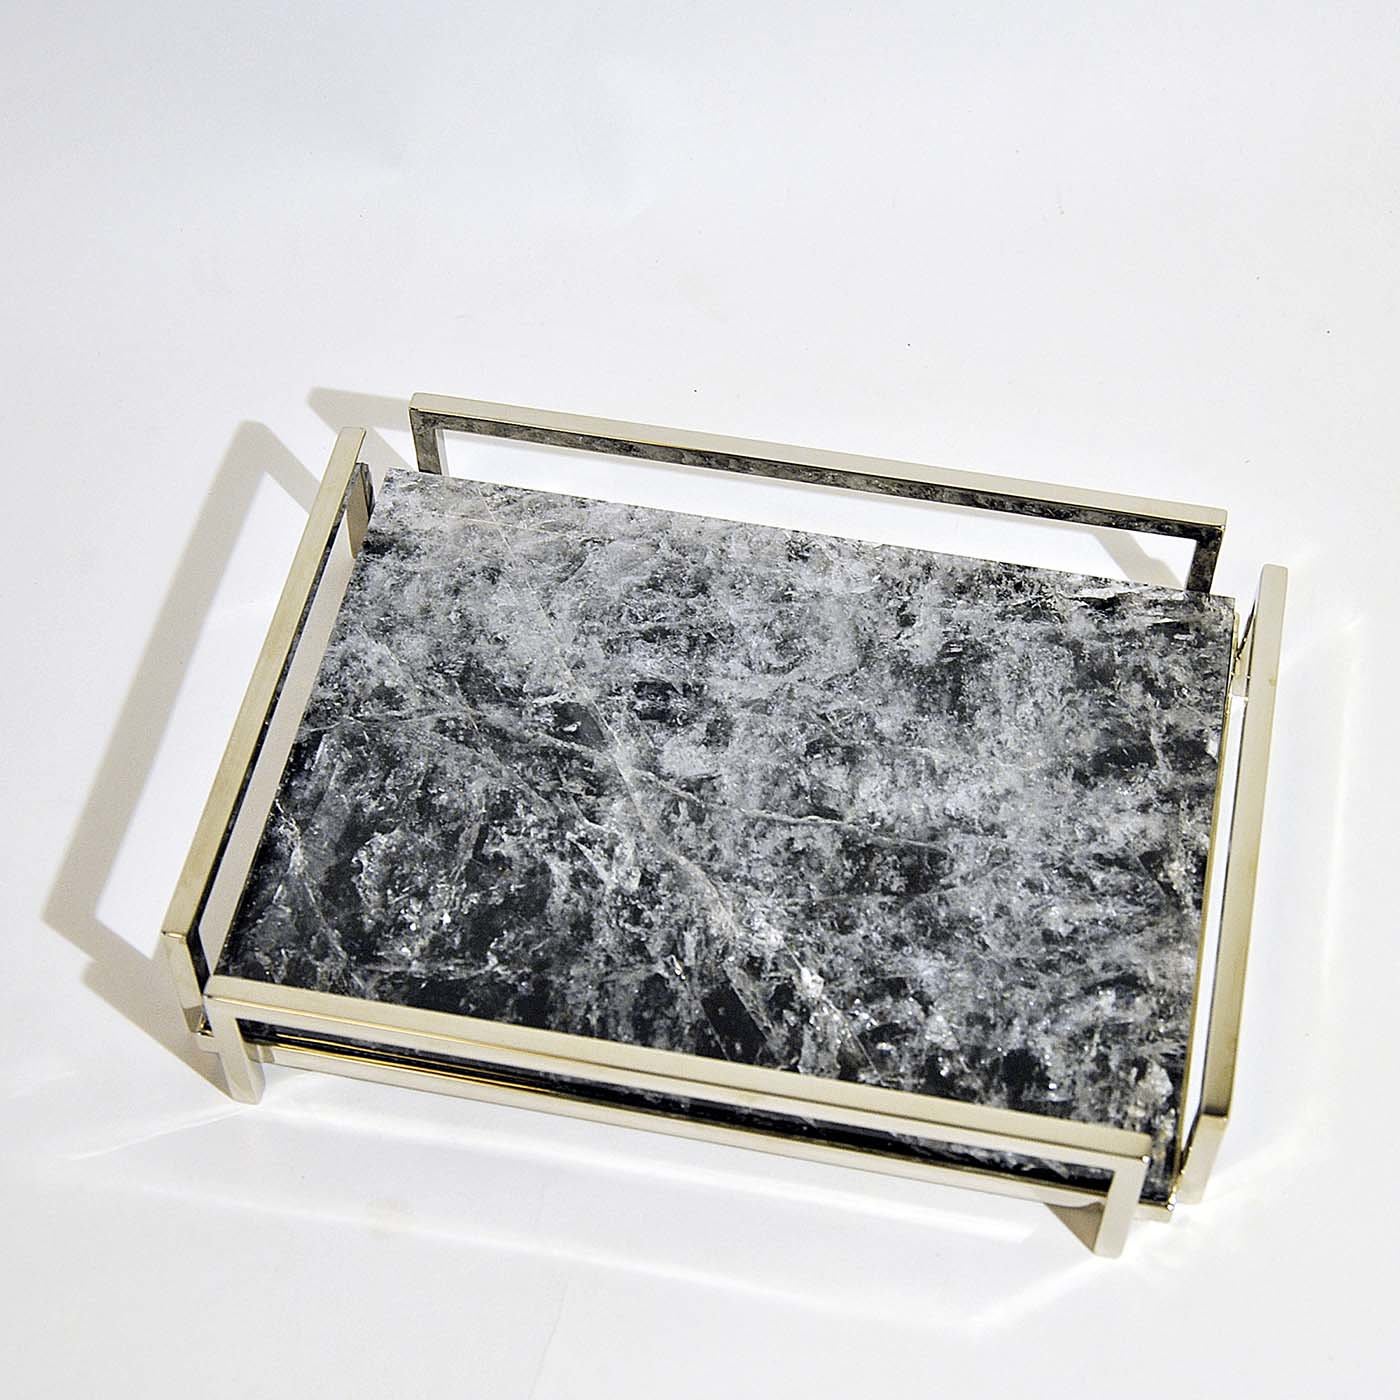 Plateau de table carré MARCEAU - Noir - cadre laiton